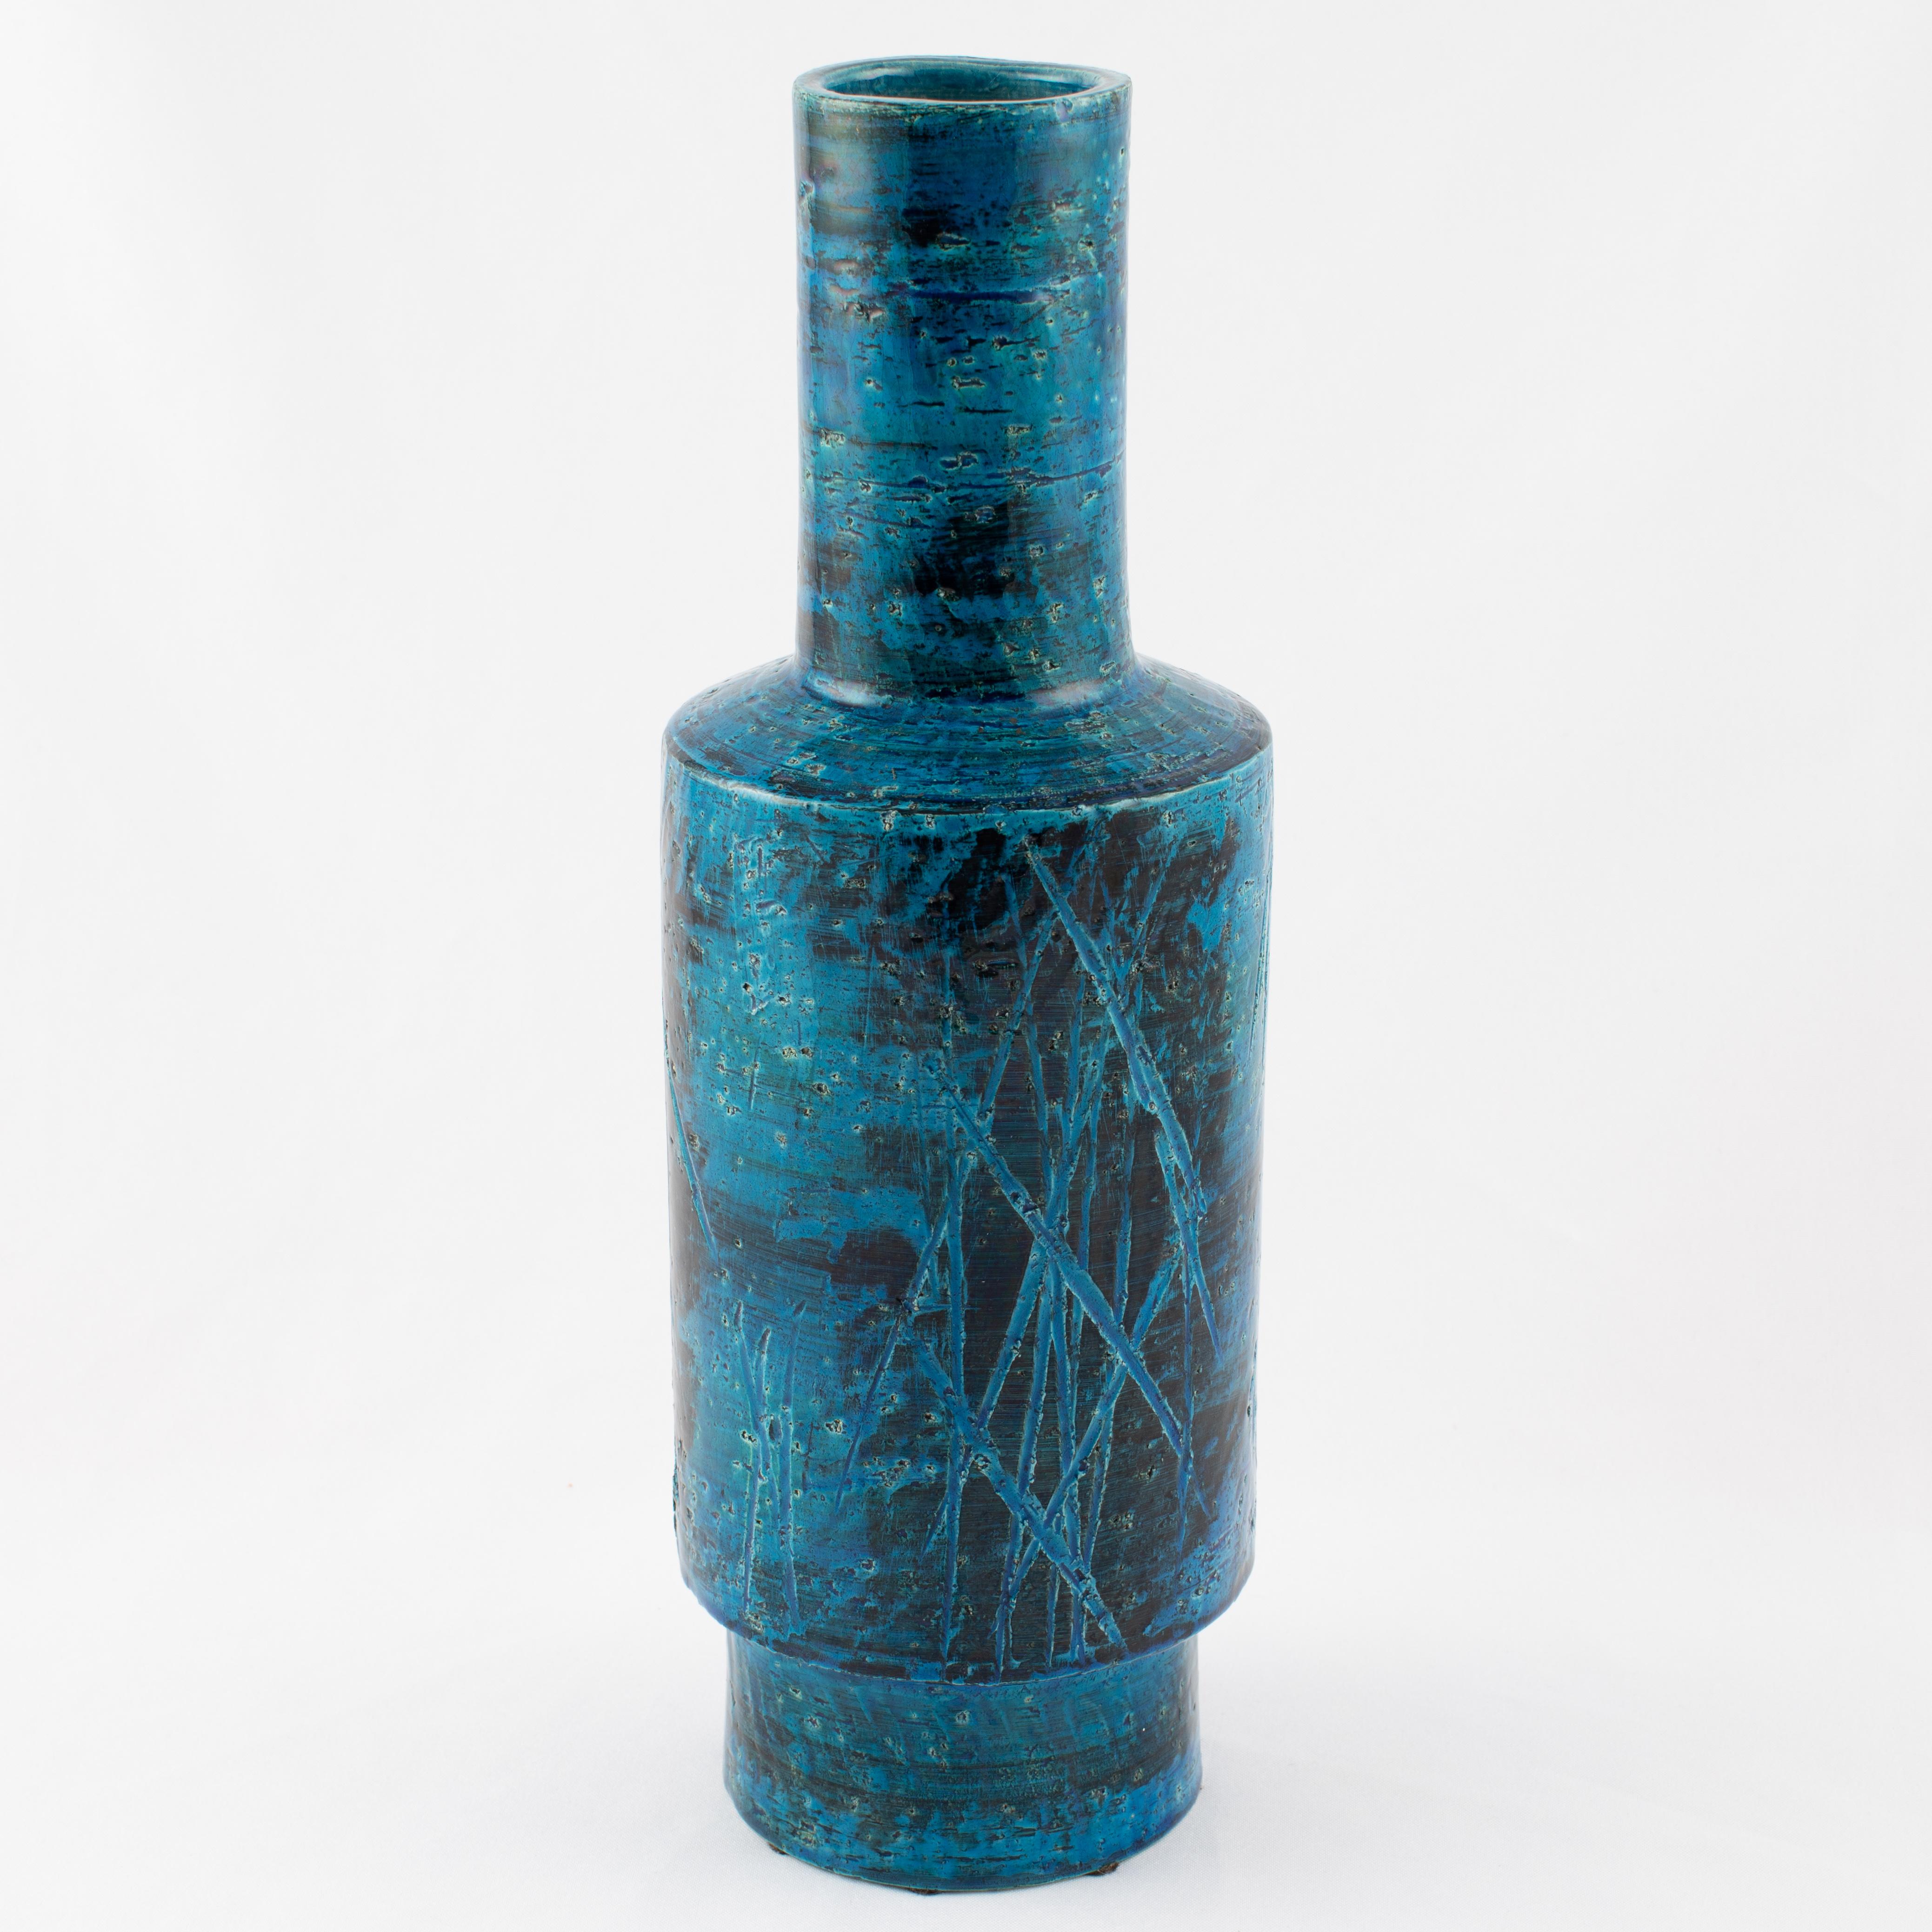 Large blue and black cylindrical ceramic vase from Aldo Londi's iconic 